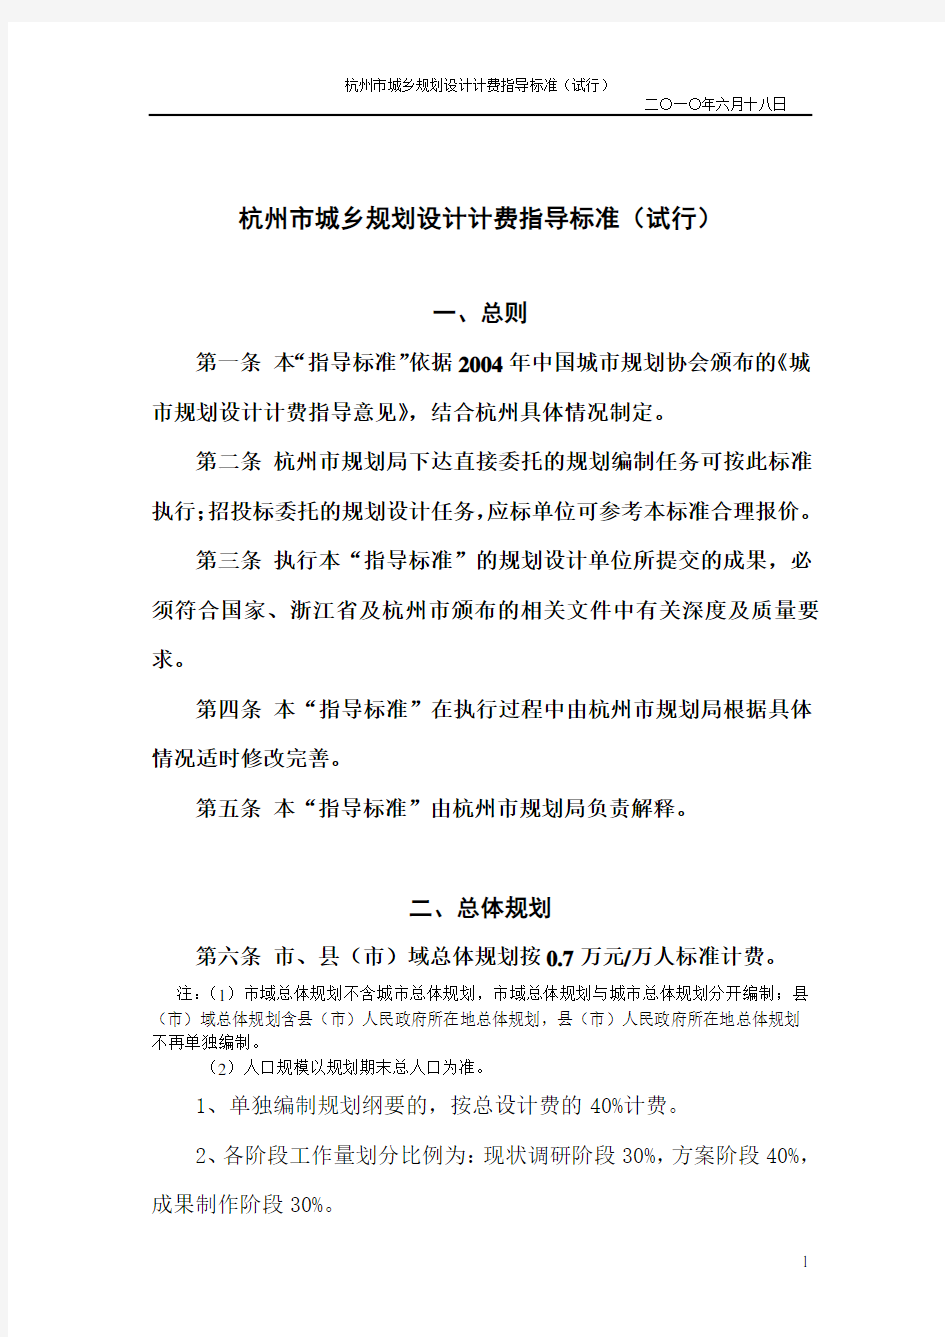 杭州市城乡规划设计计费指导标准(试行)(第十二次修改稿)